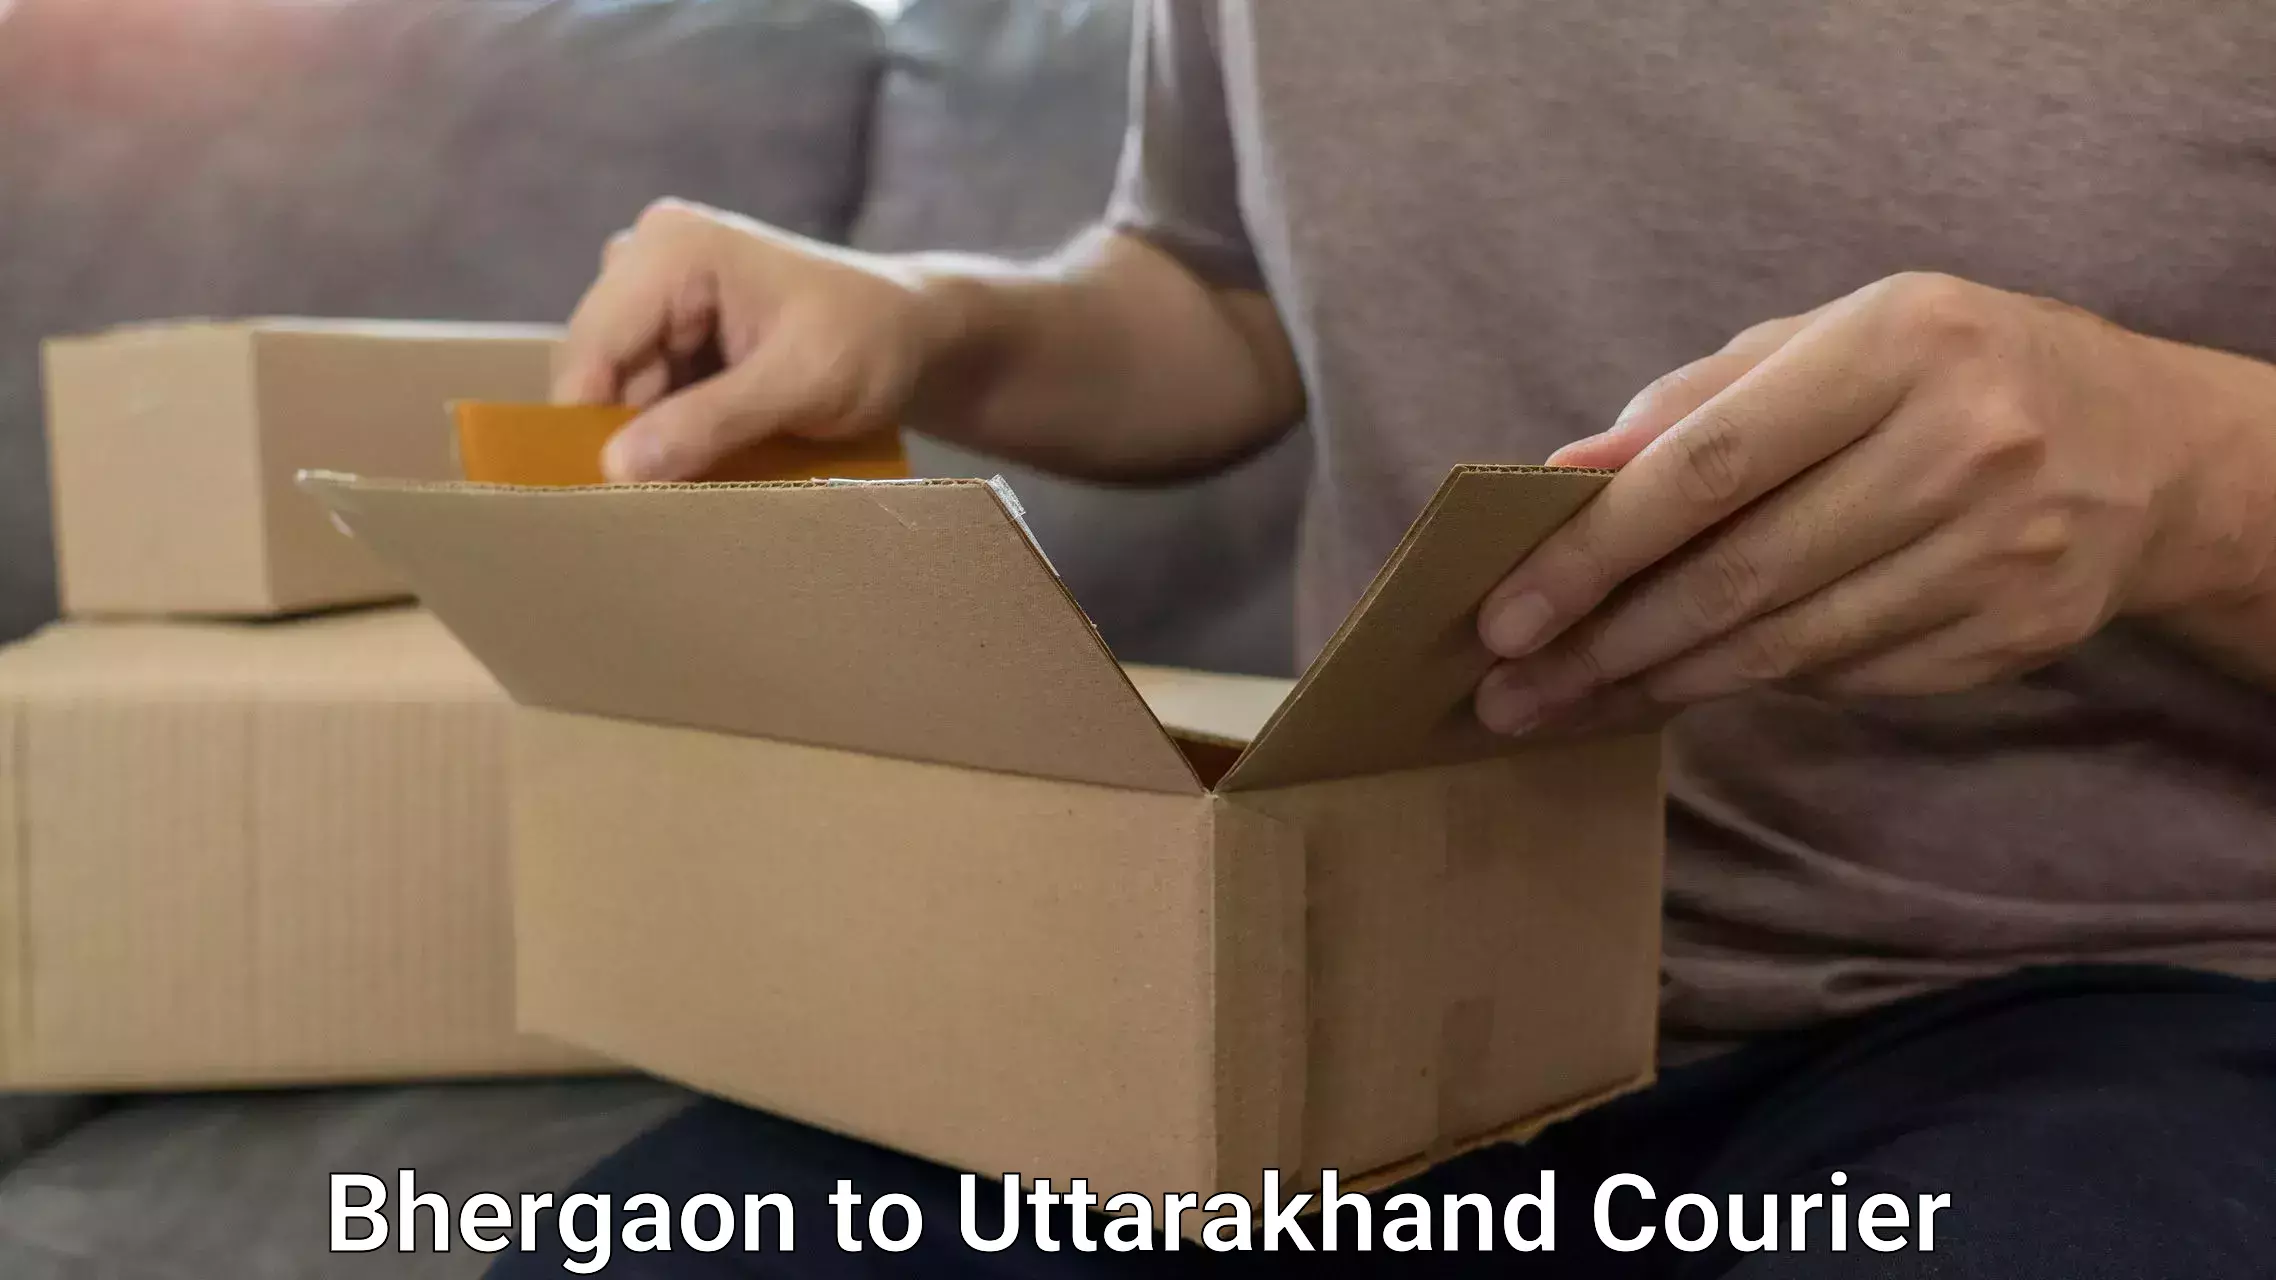 Luggage shipping service Bhergaon to Uttarakhand